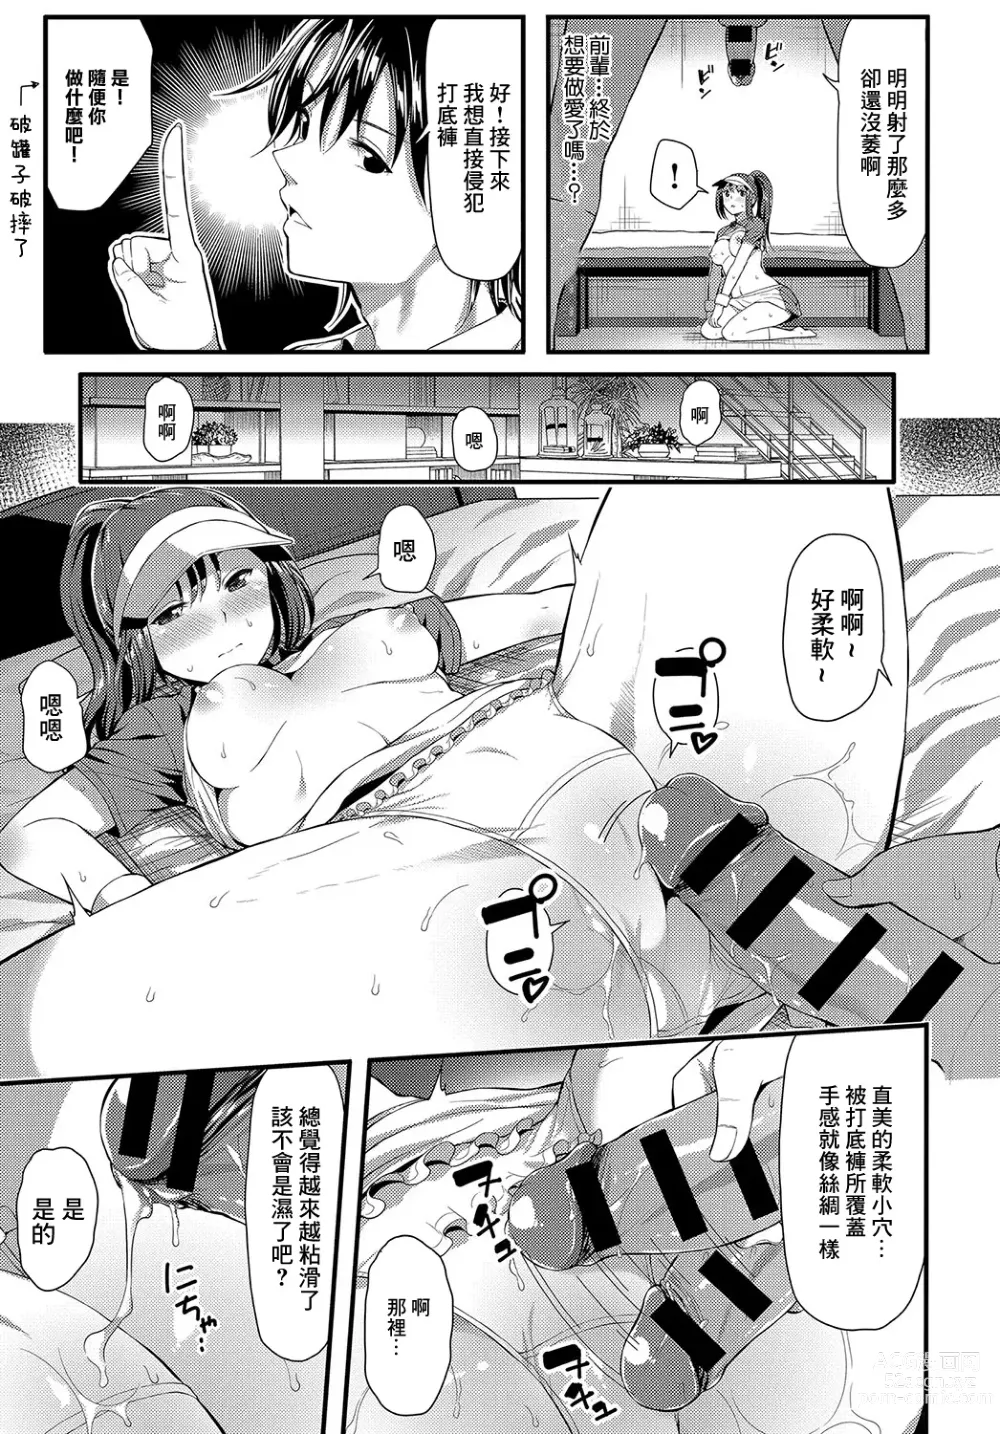 Page 9 of manga UnSkor Suko Suko!?